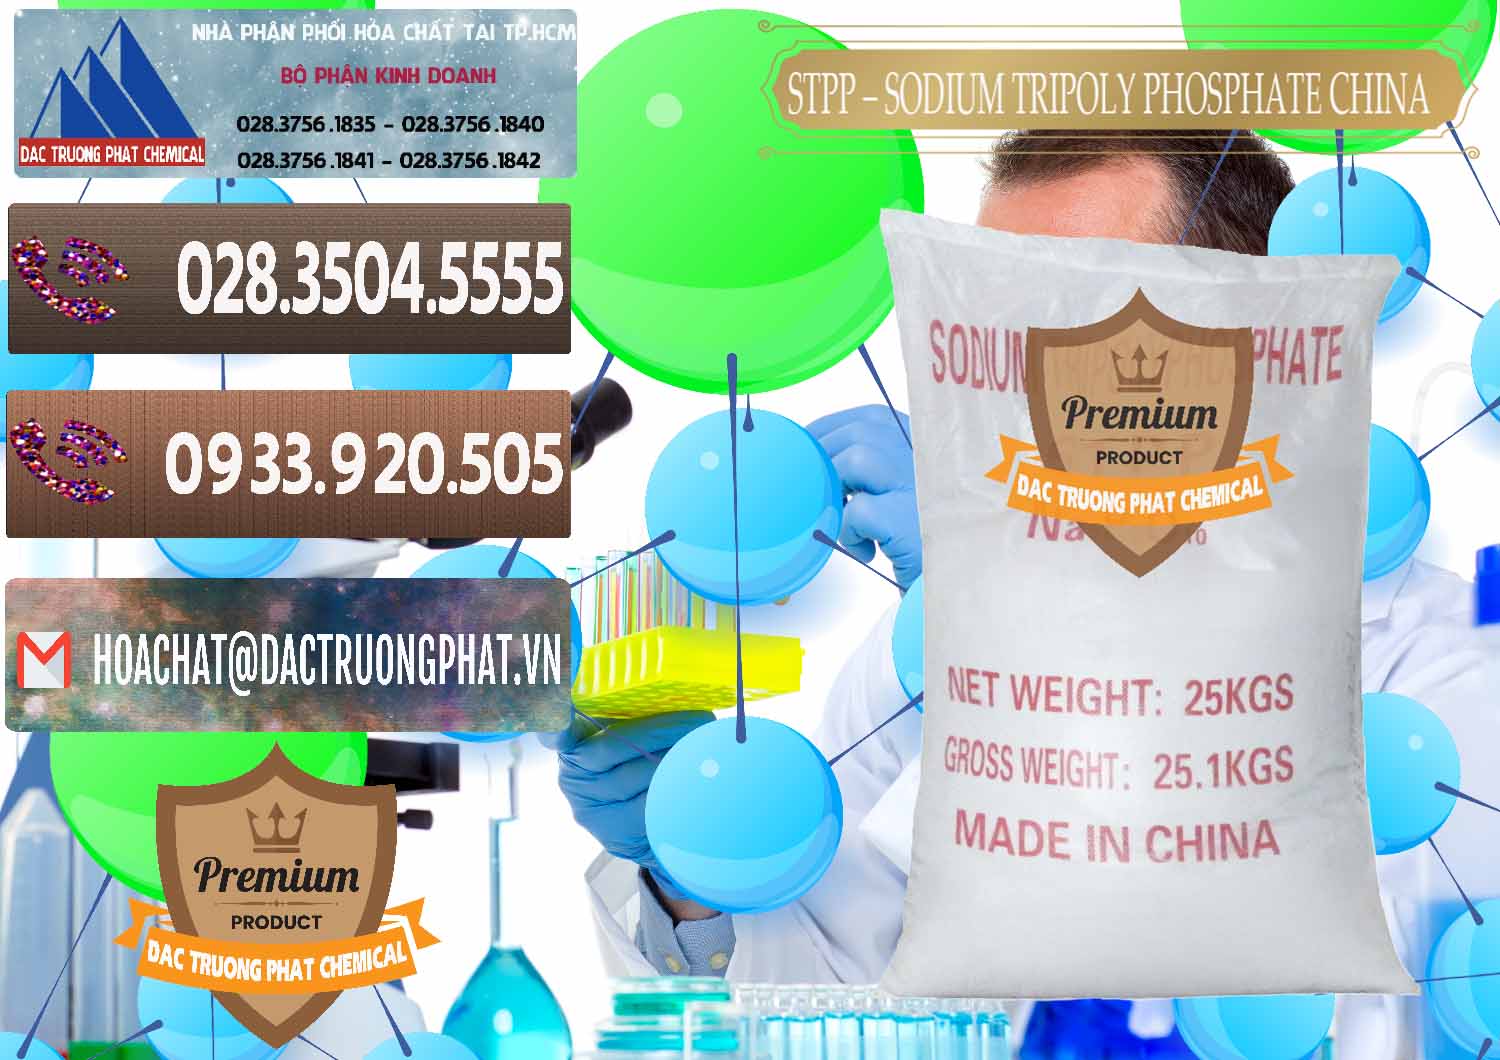 Đơn vị nhập khẩu ( bán ) Sodium Tripoly Phosphate - STPP 96% Chữ Đỏ Trung Quốc China - 0155 - Nơi chuyên cung cấp và bán hóa chất tại TP.HCM - hoachatviet.net